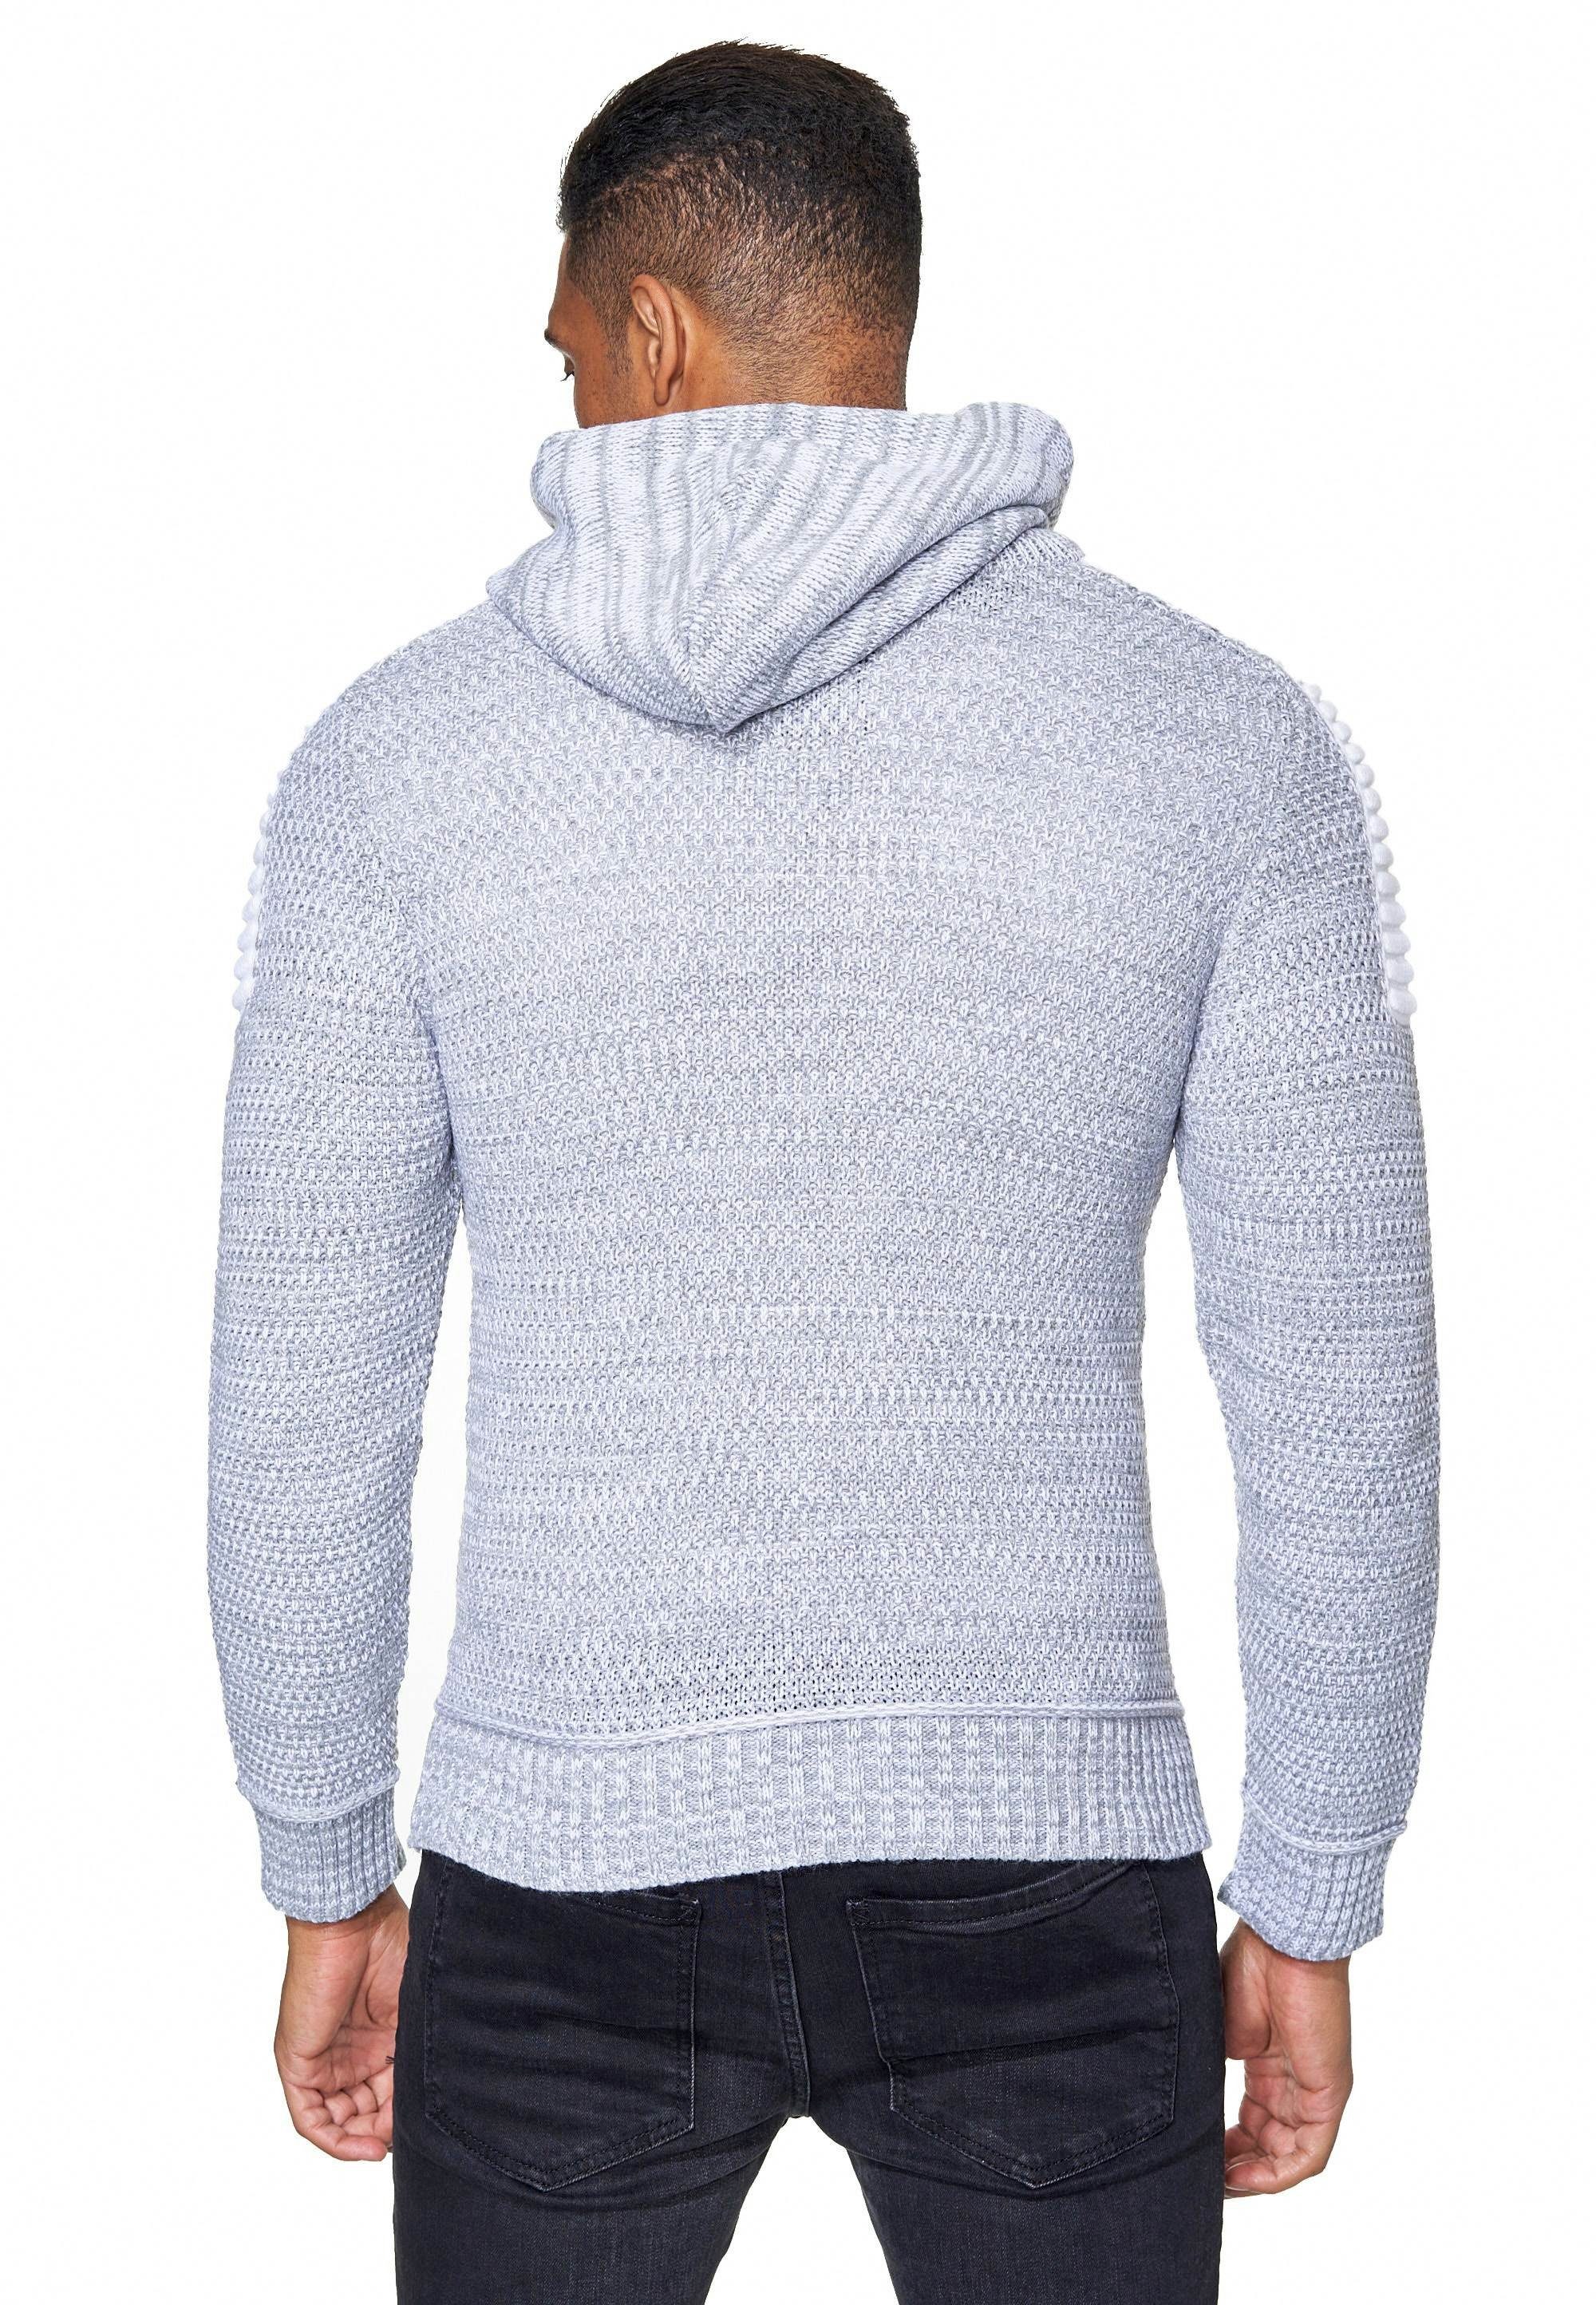 Rusty Neal Kapuzensweatshirt Knitwear mit Reißverschluss grau praktischem